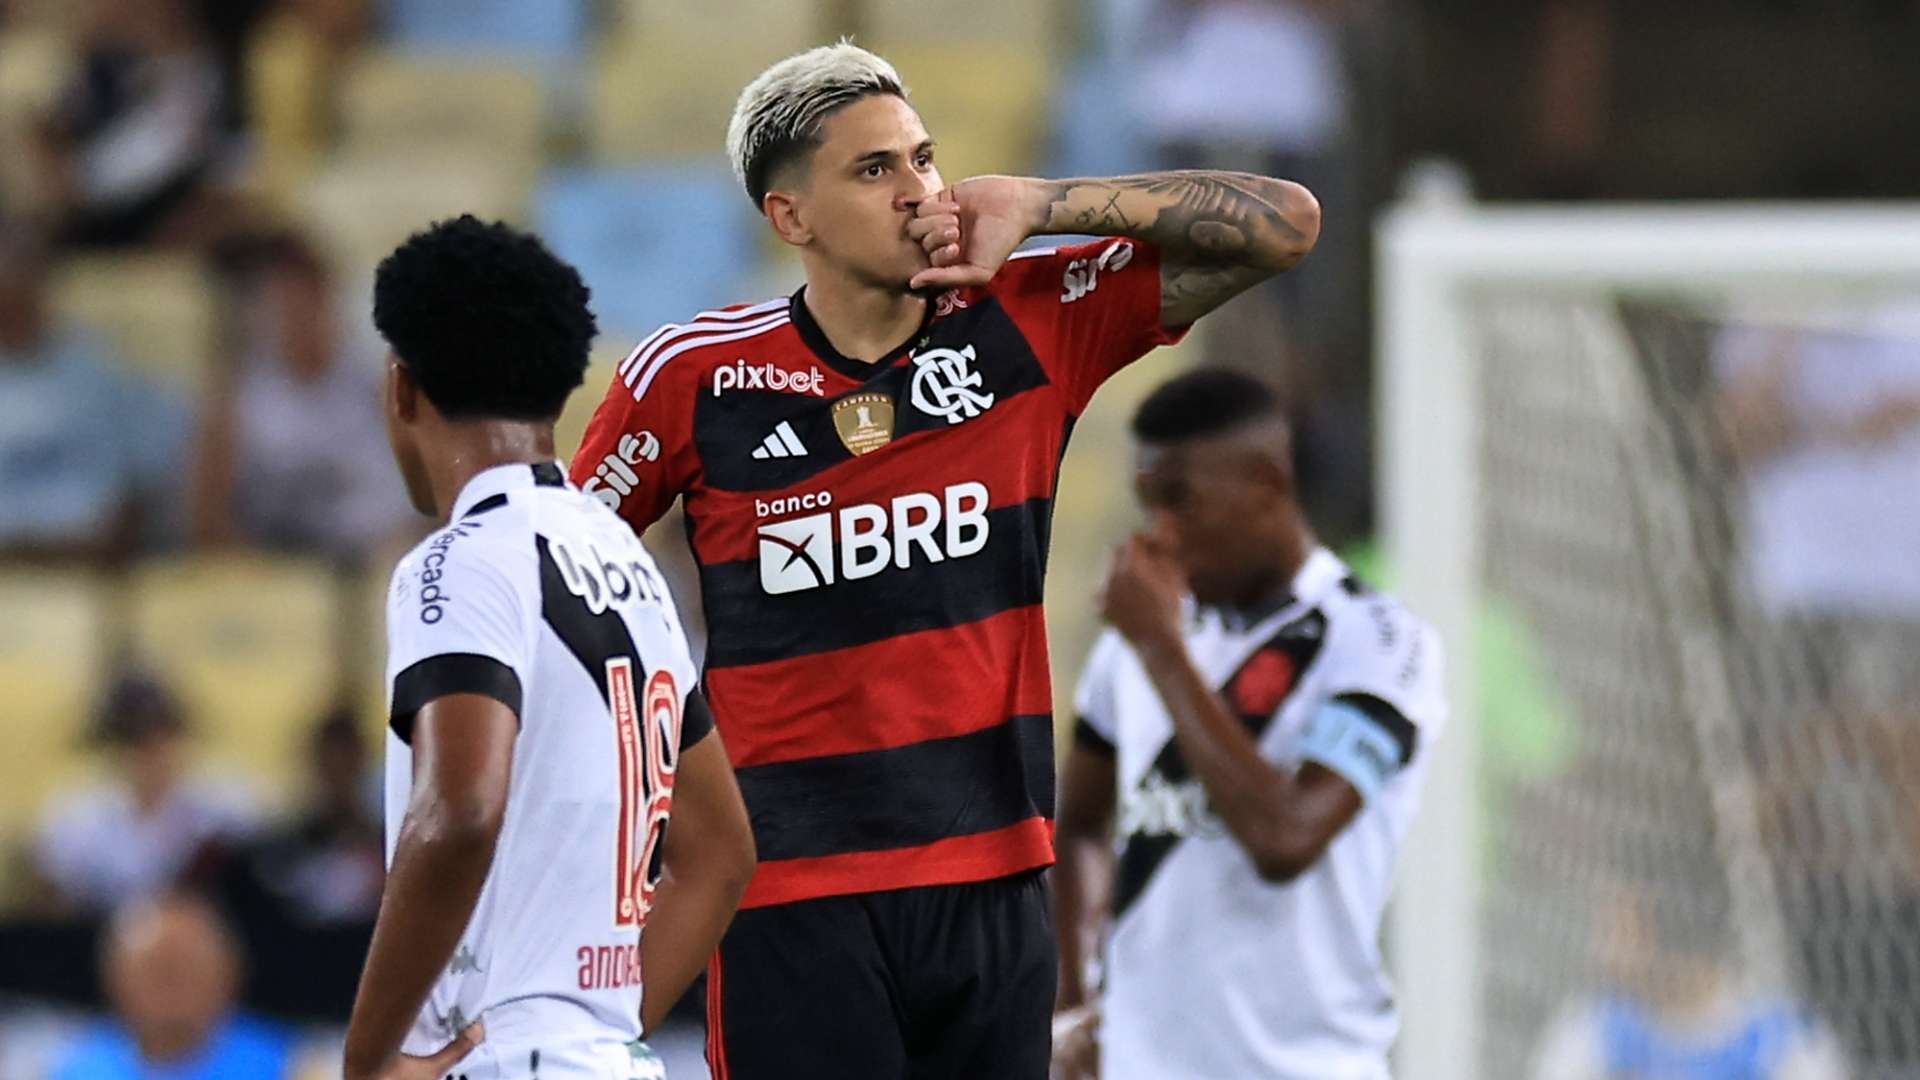 Pedro Flamengo Campeonato Carioca